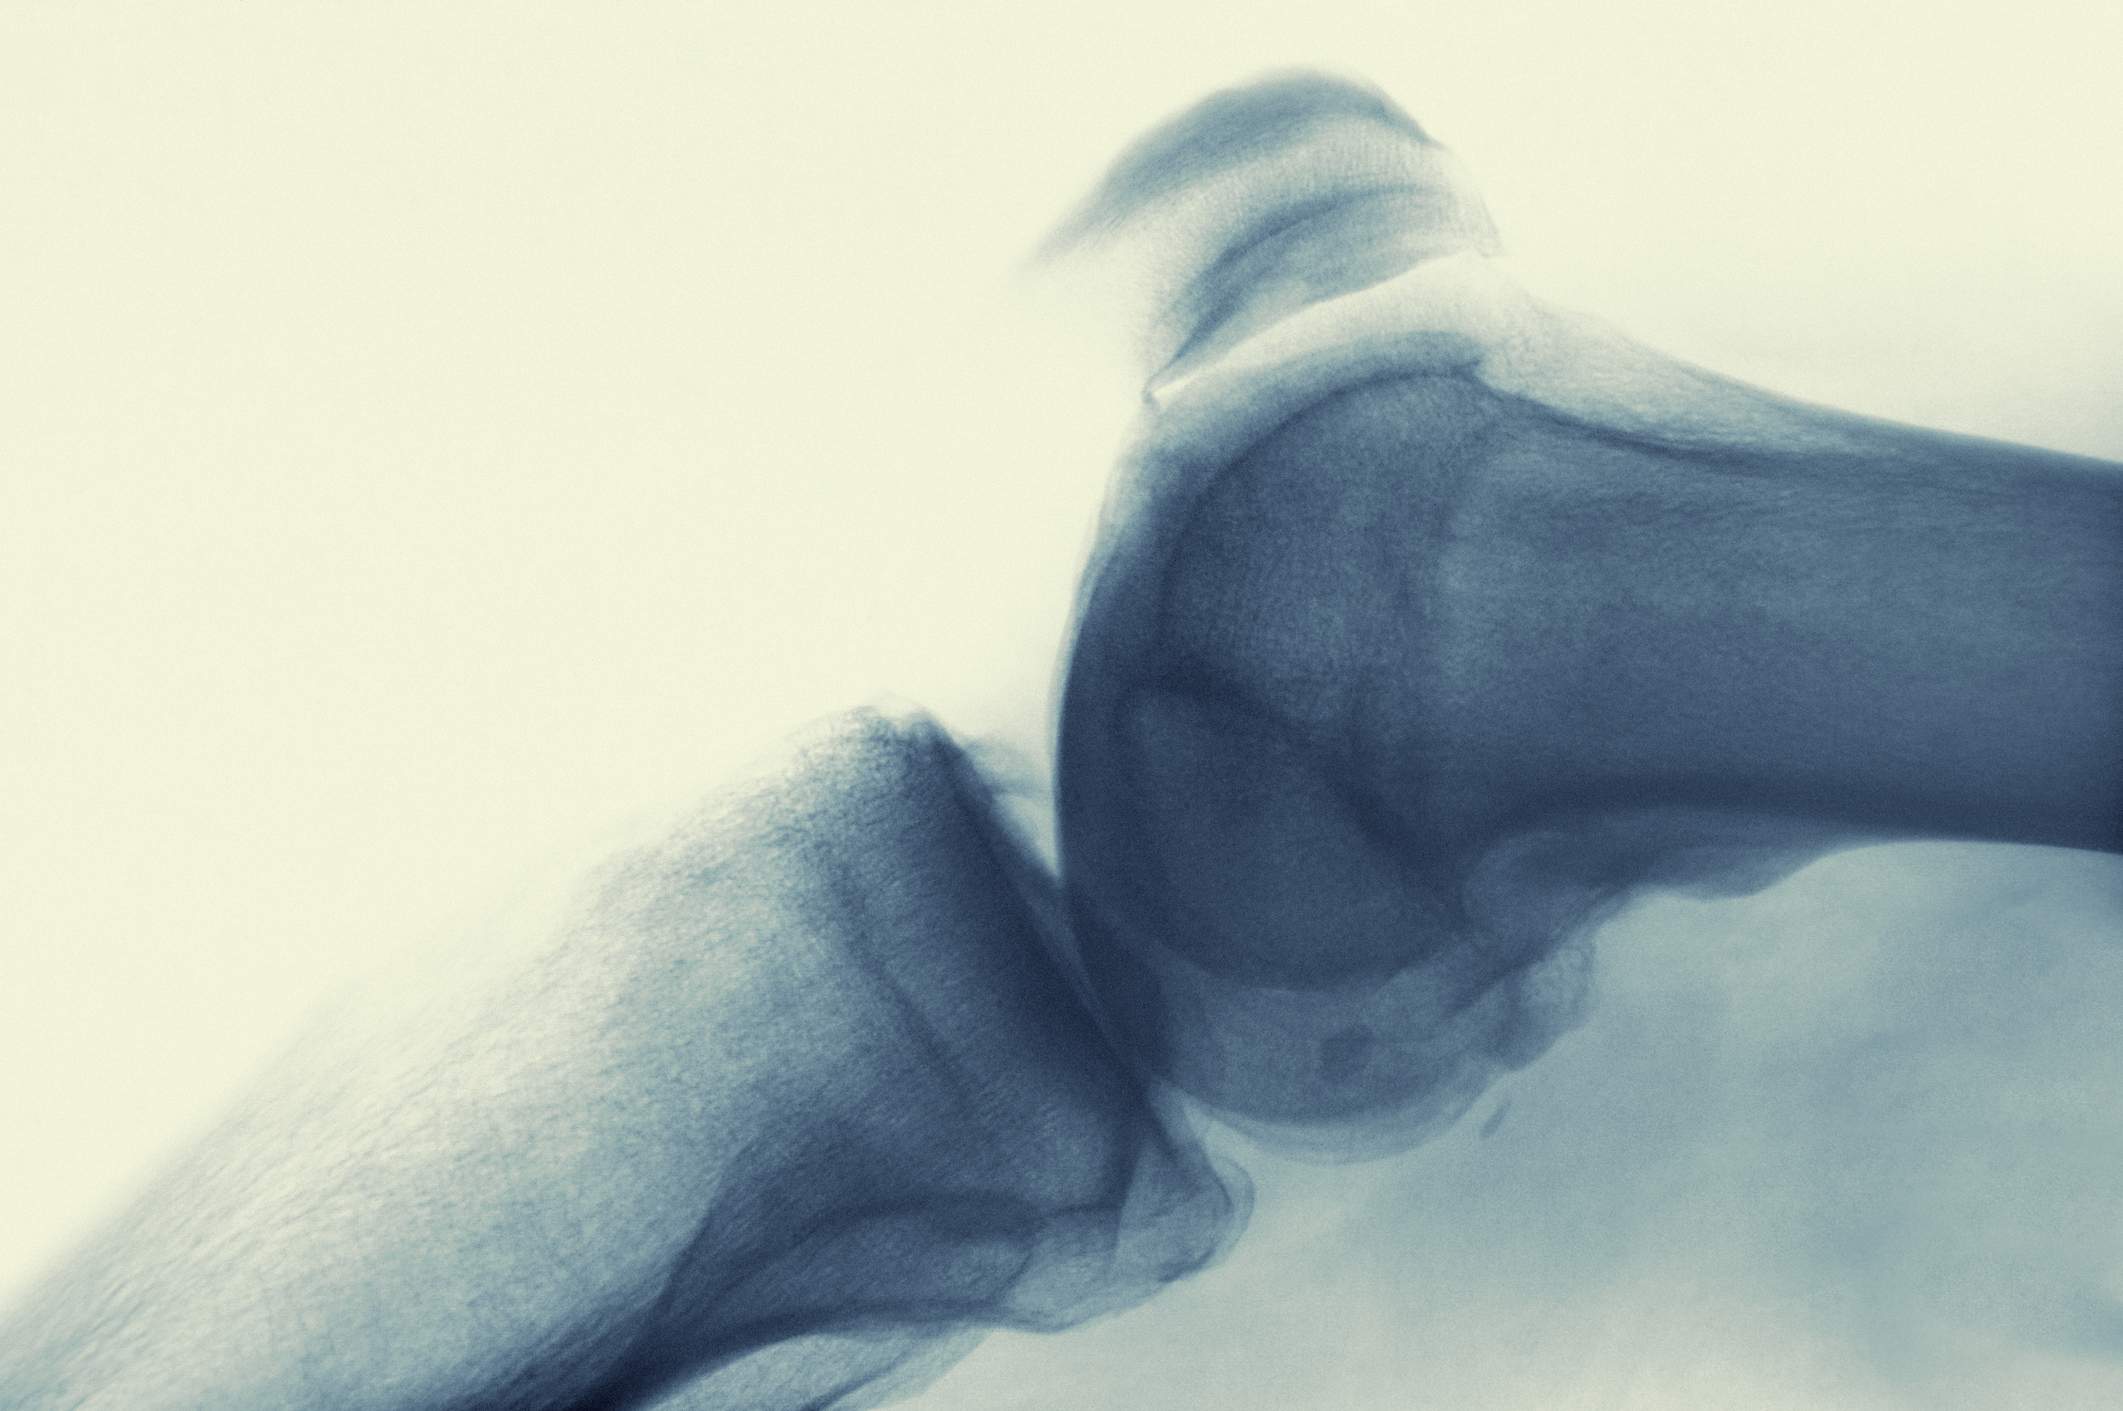 Ondt på ydersiden af knæet pga artrose